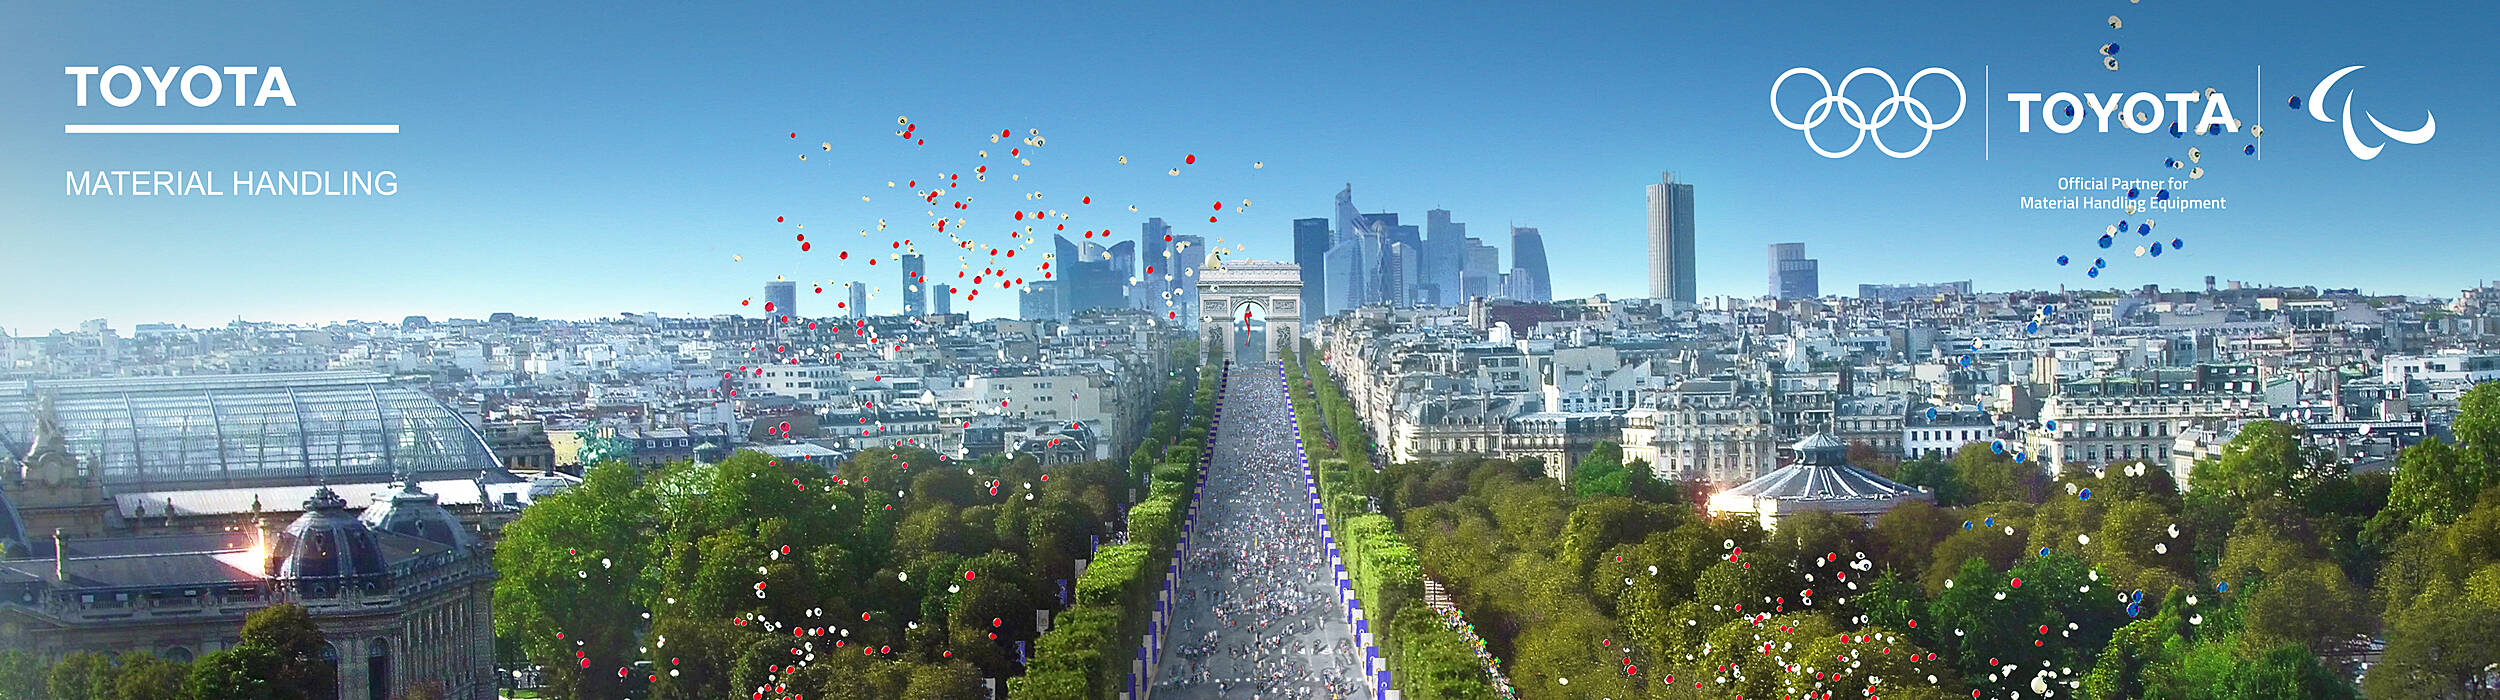 de olympiske og paralympiske lege i Paris 2024